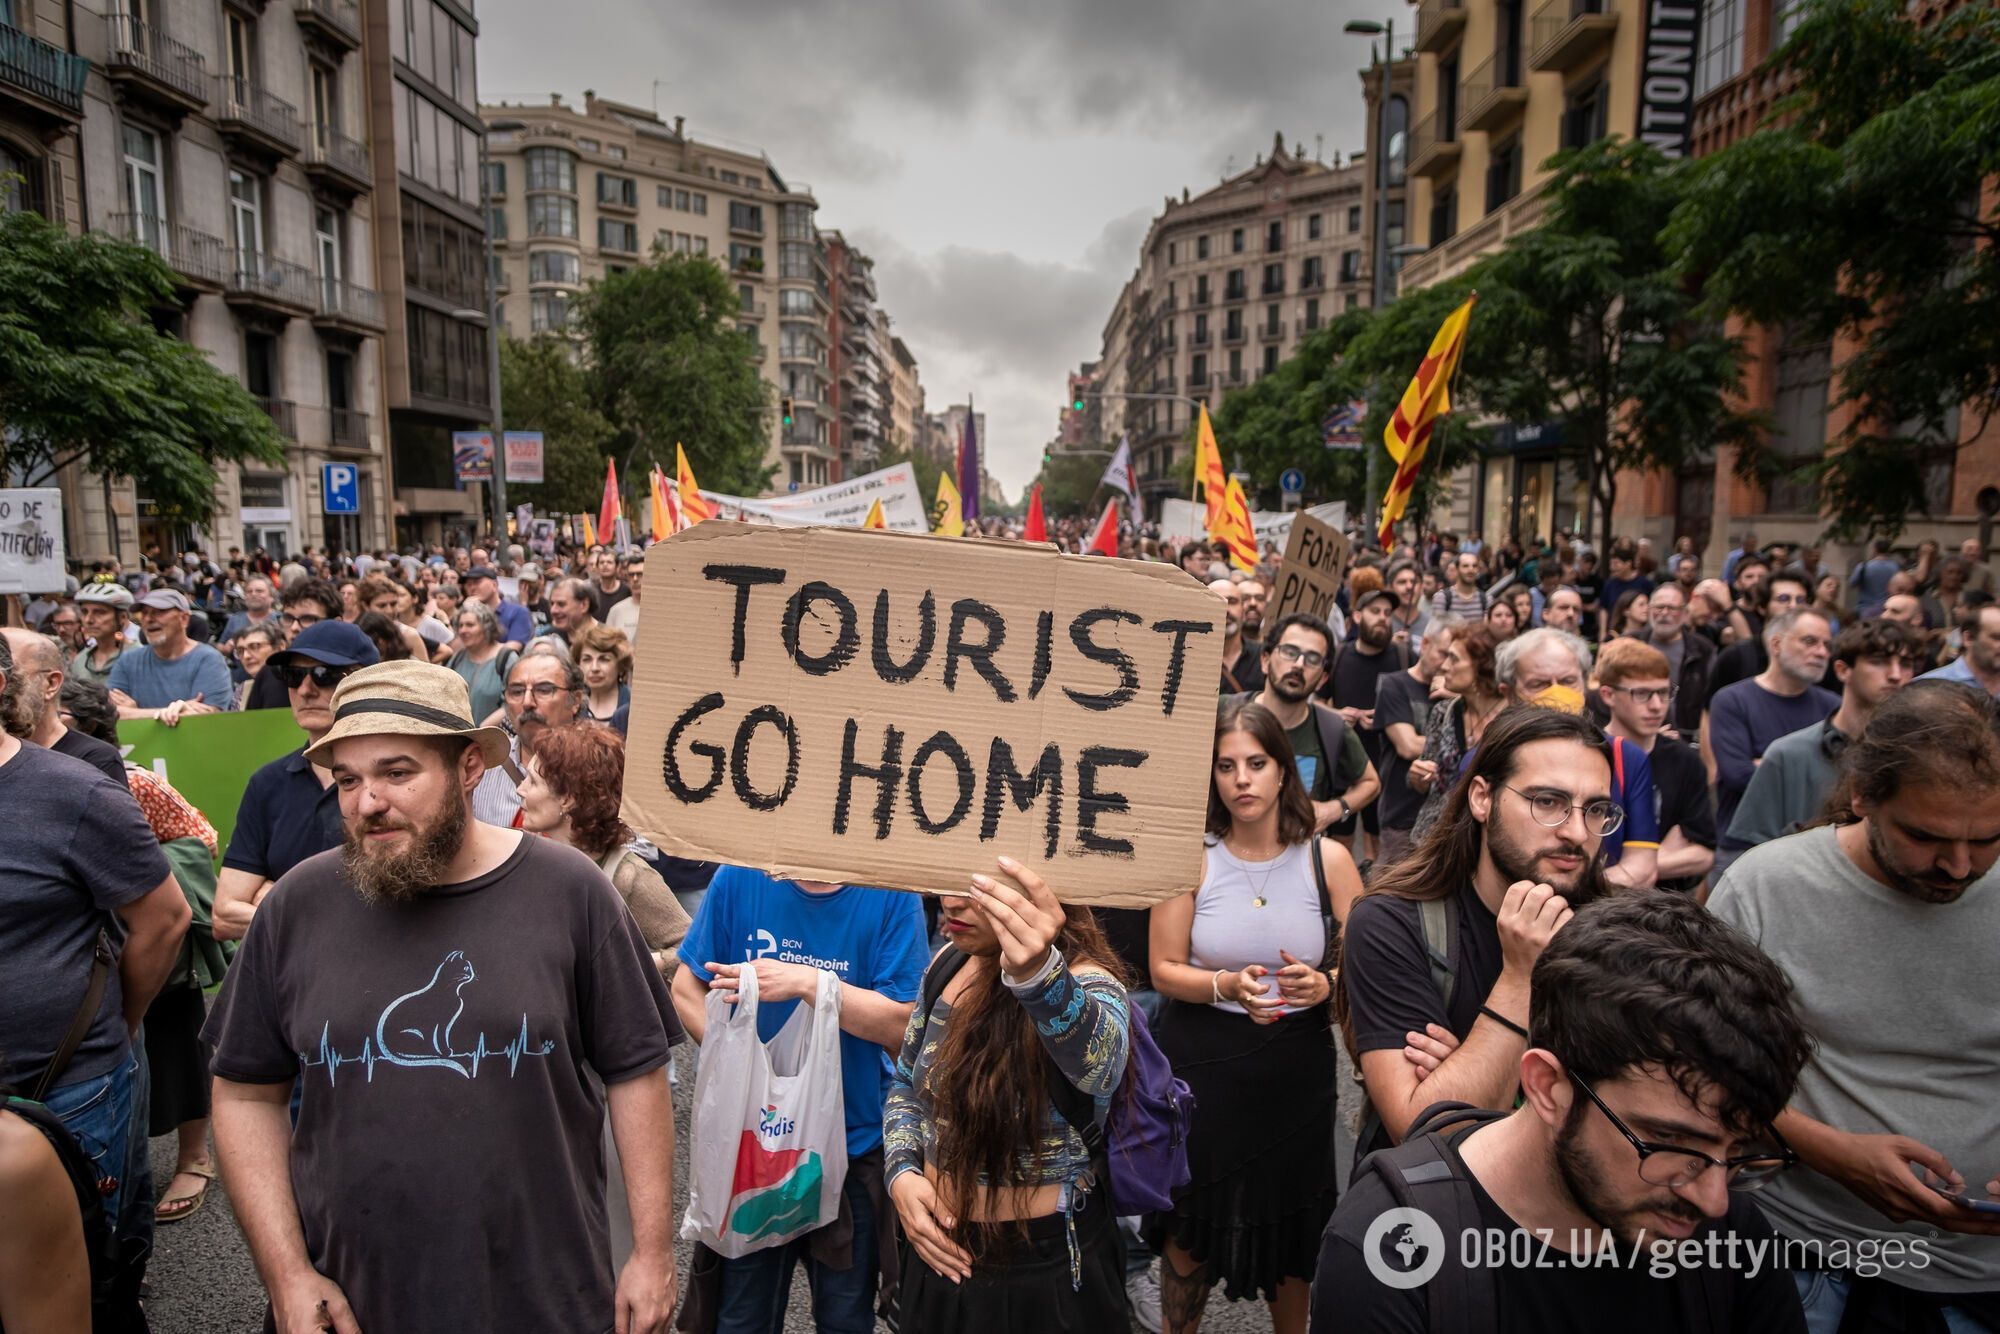 Барселона присоединилась к войне Испании с туристами: мэр обещает выгнать AirBnb из города до 2029 года. Что известно